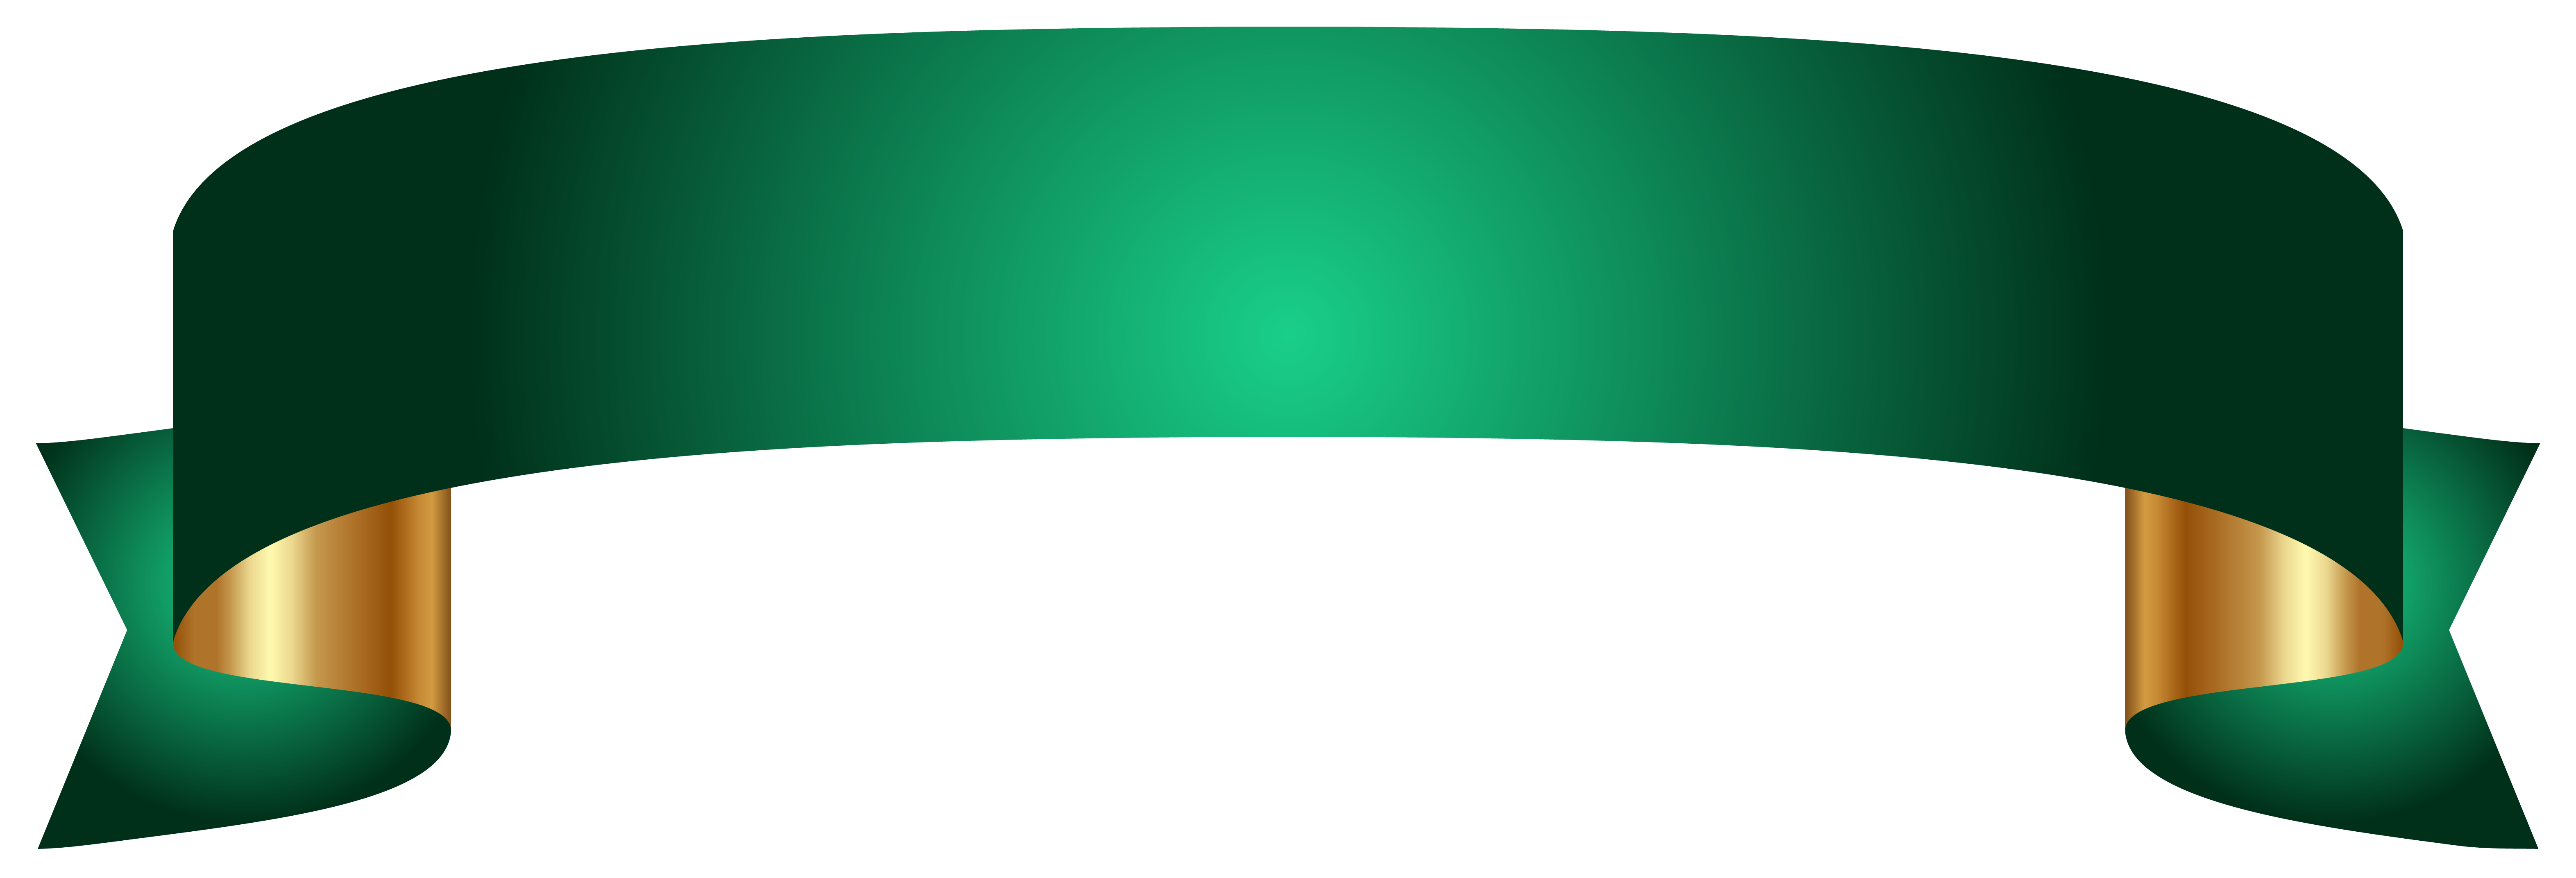 Grünes Banner PNG-Bild